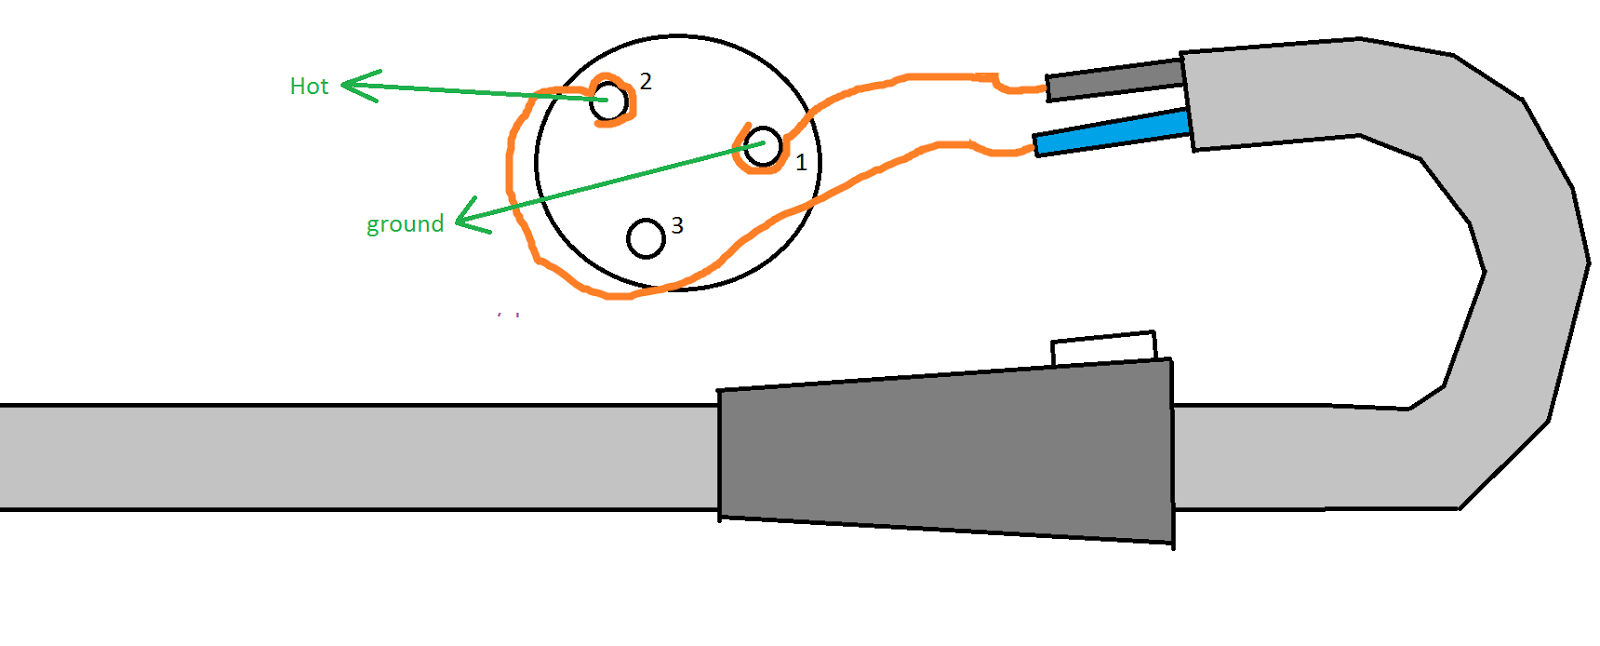 Cara Sederhana Membuat Dan Memasang Kabel Microphone Sendiri Dari Kabel Bekas - Wijdan Kelistrikan